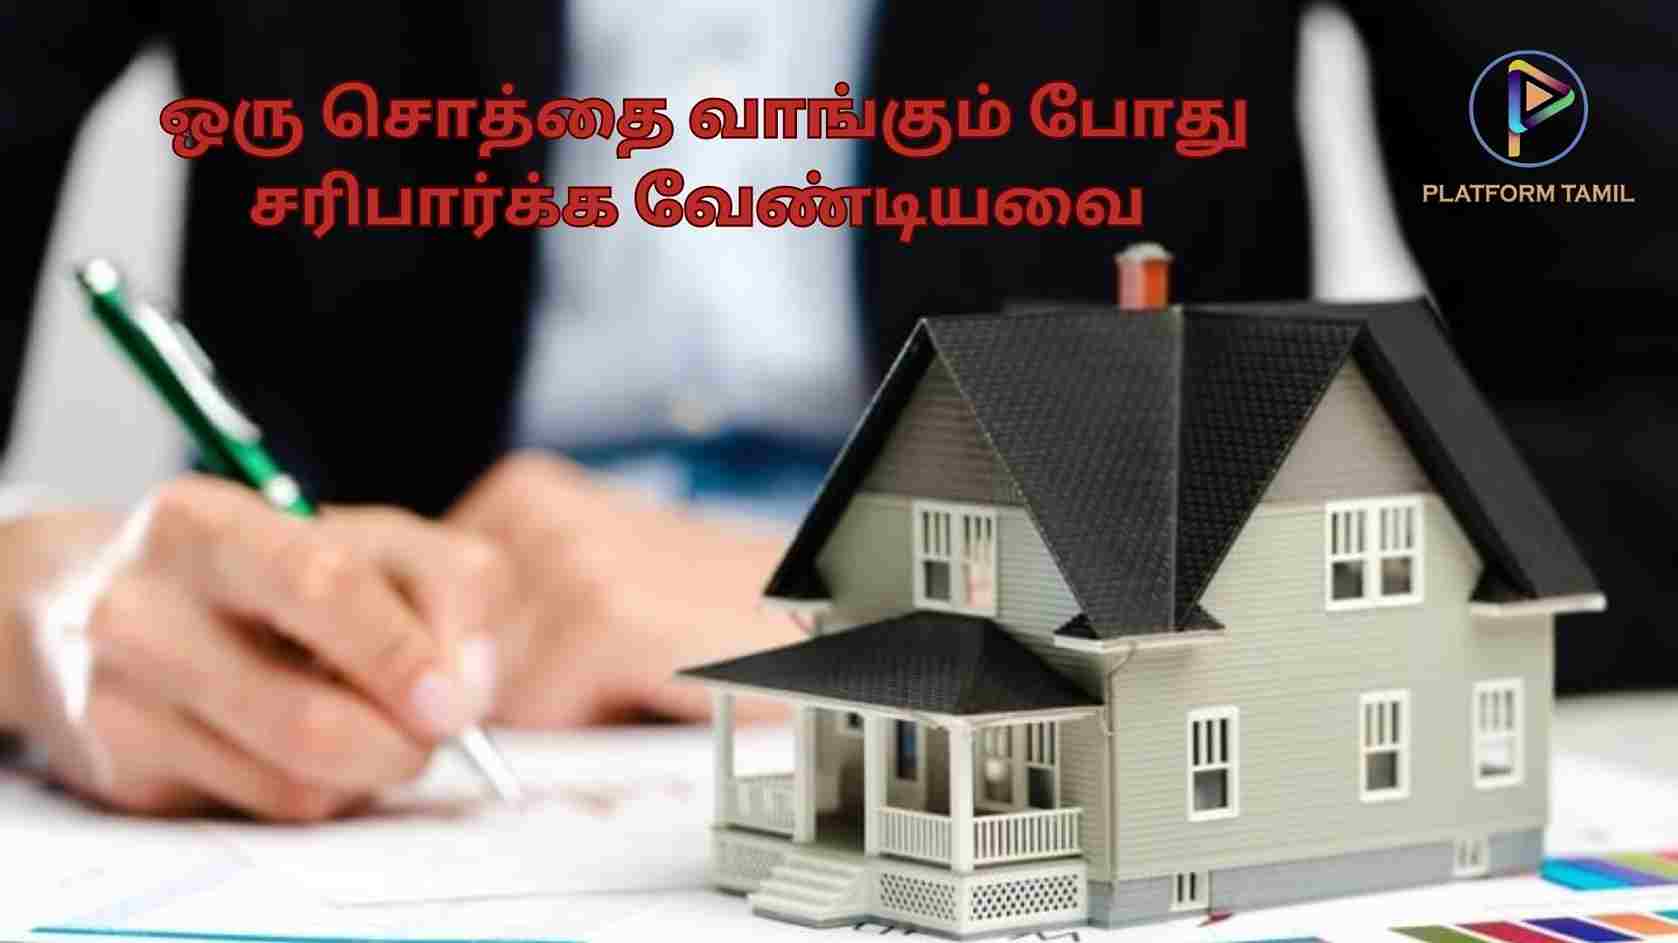 சொத்து வாங்குவதற்கு முன் கவனிக்க வேண்டியவை | Things To Keep in Mind Before Buying a Property - Platform Tamil